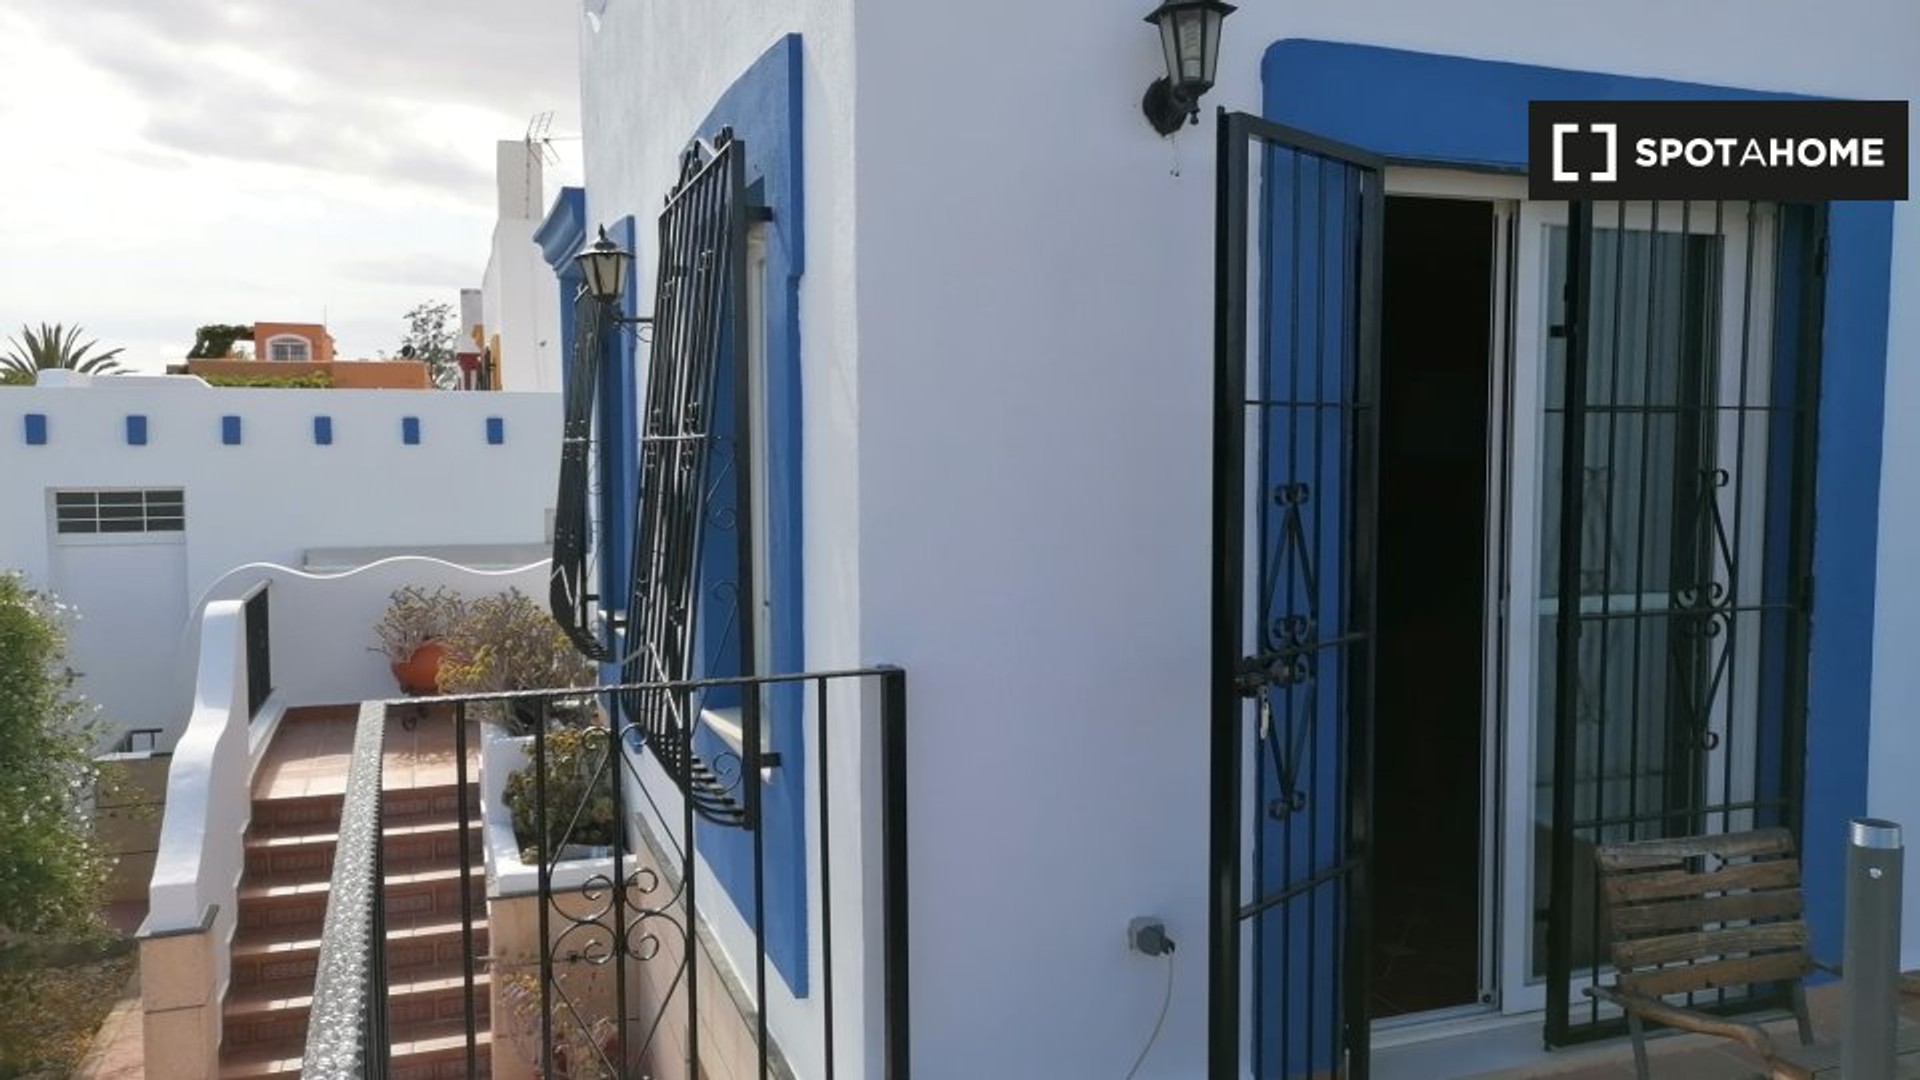 Accommodation in the centre of Almeria